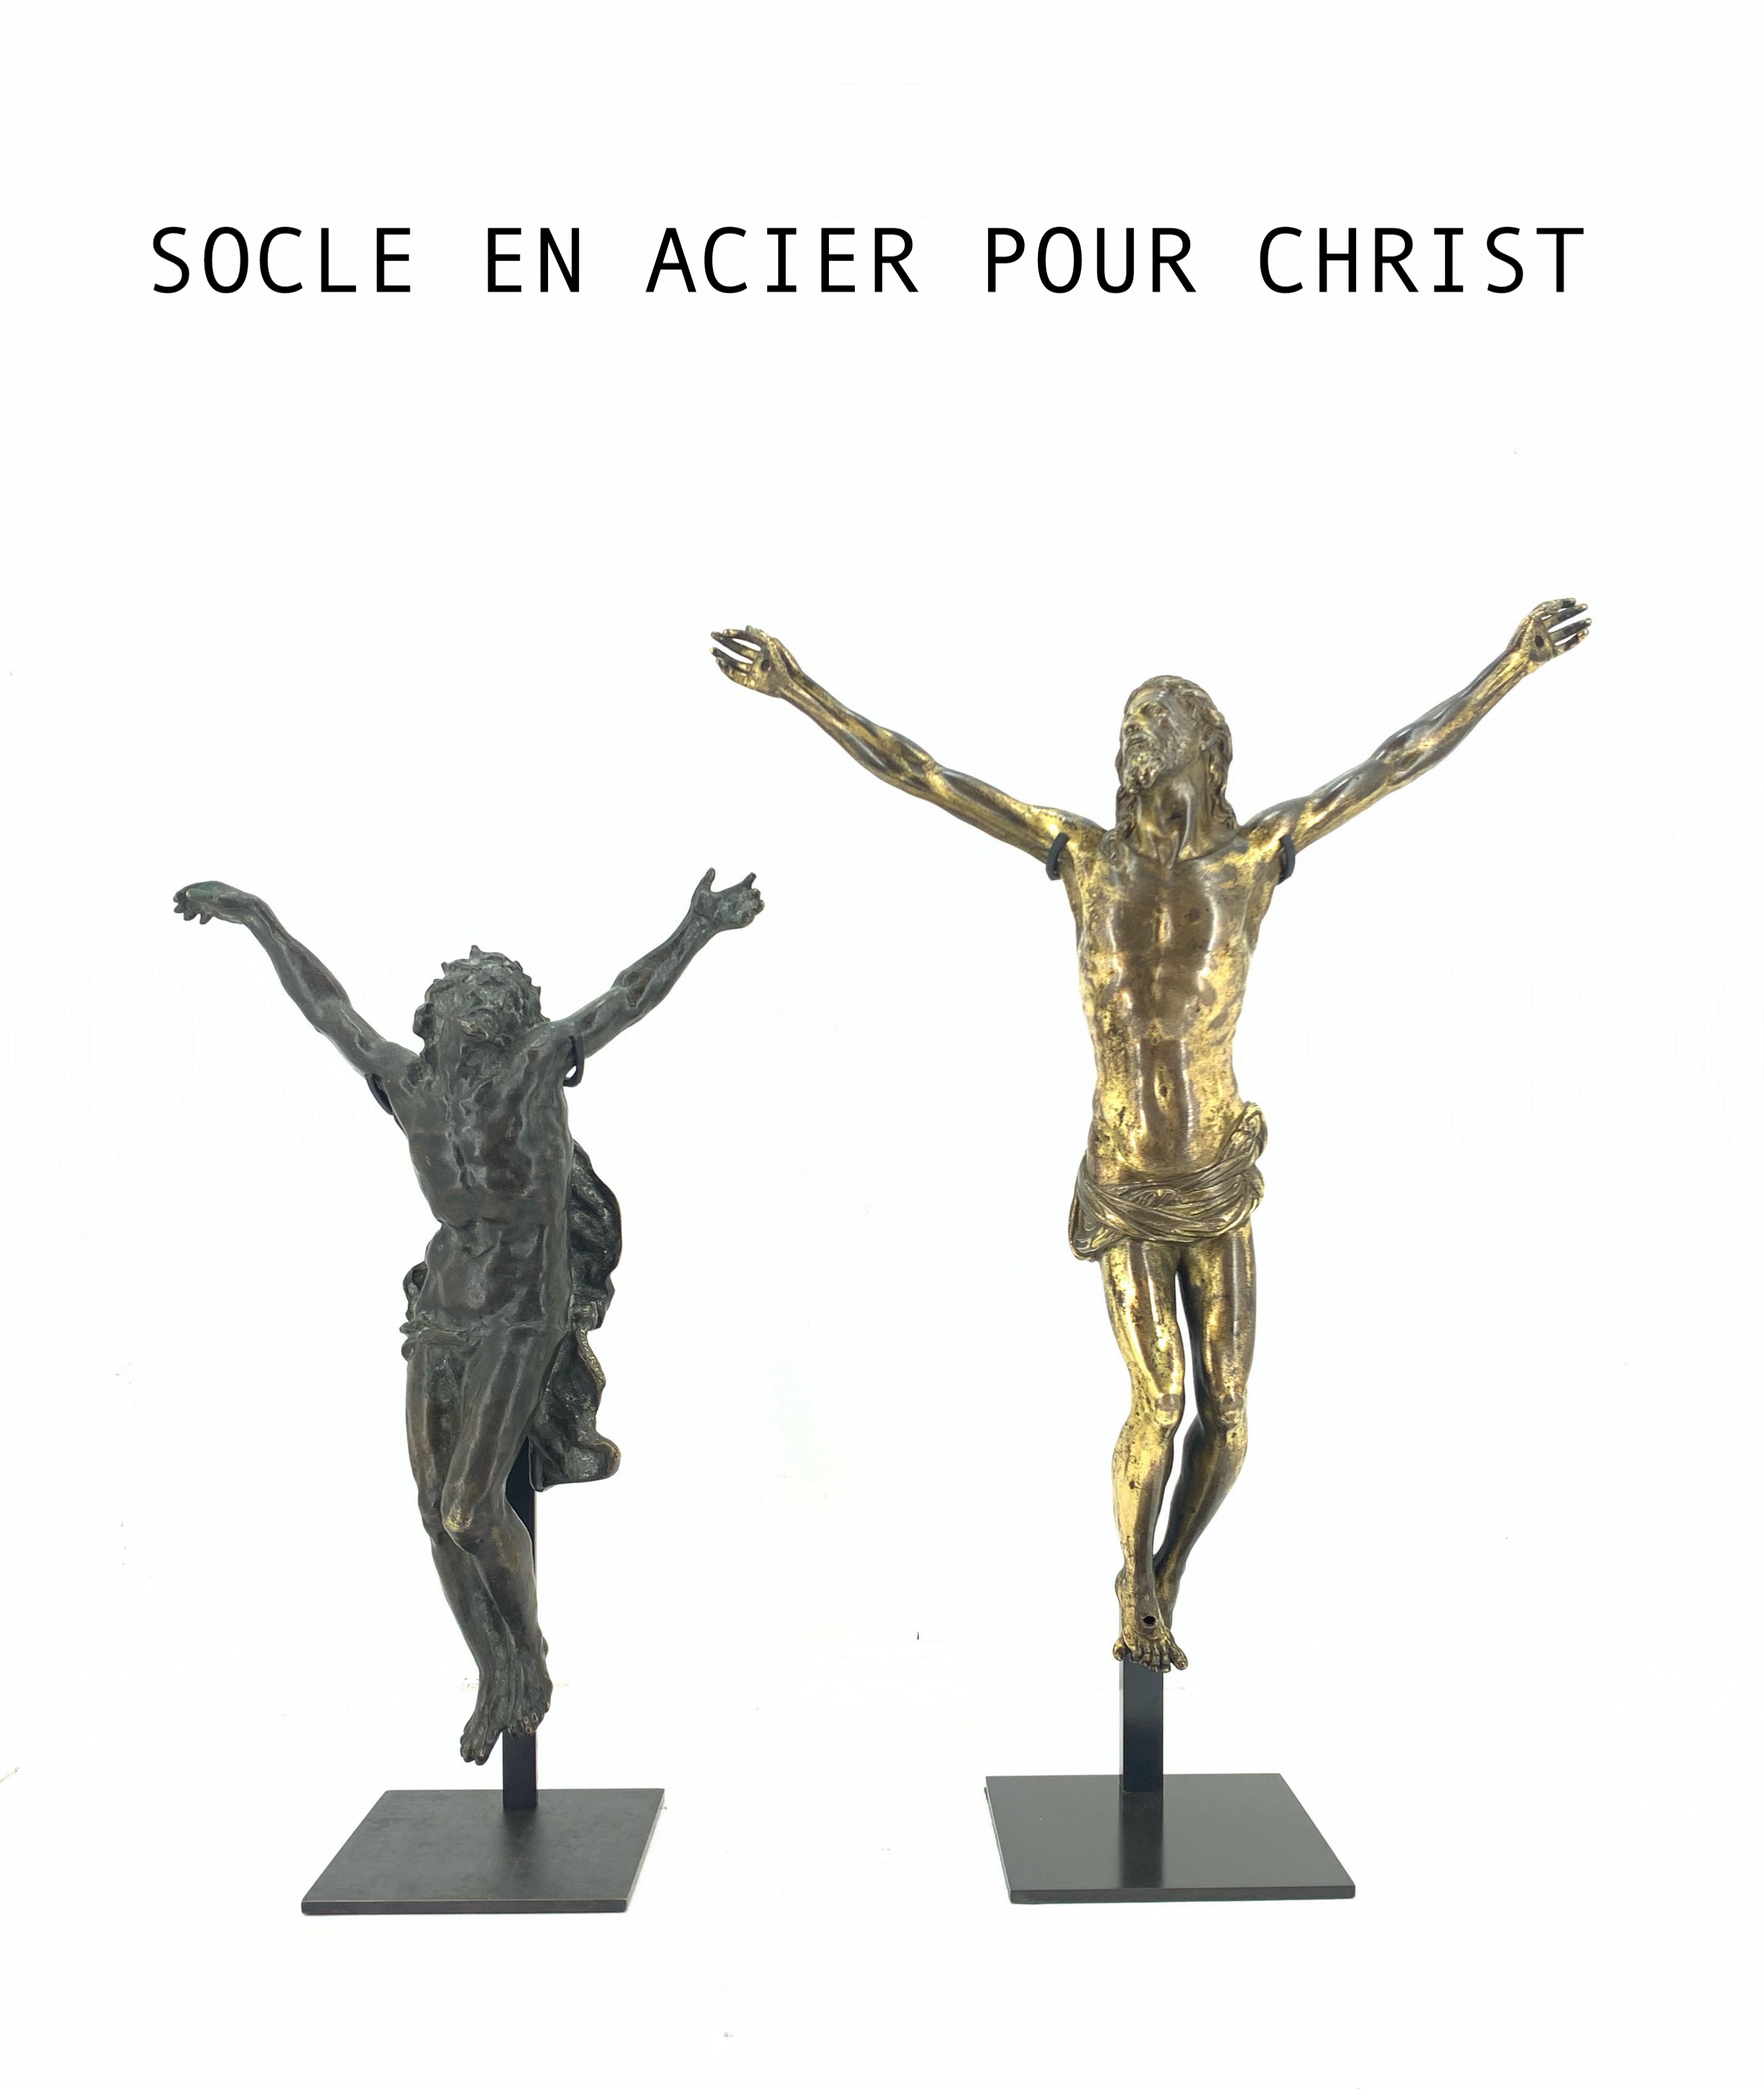 deux christ en croix sur socle en acier noir sur fond blanc 